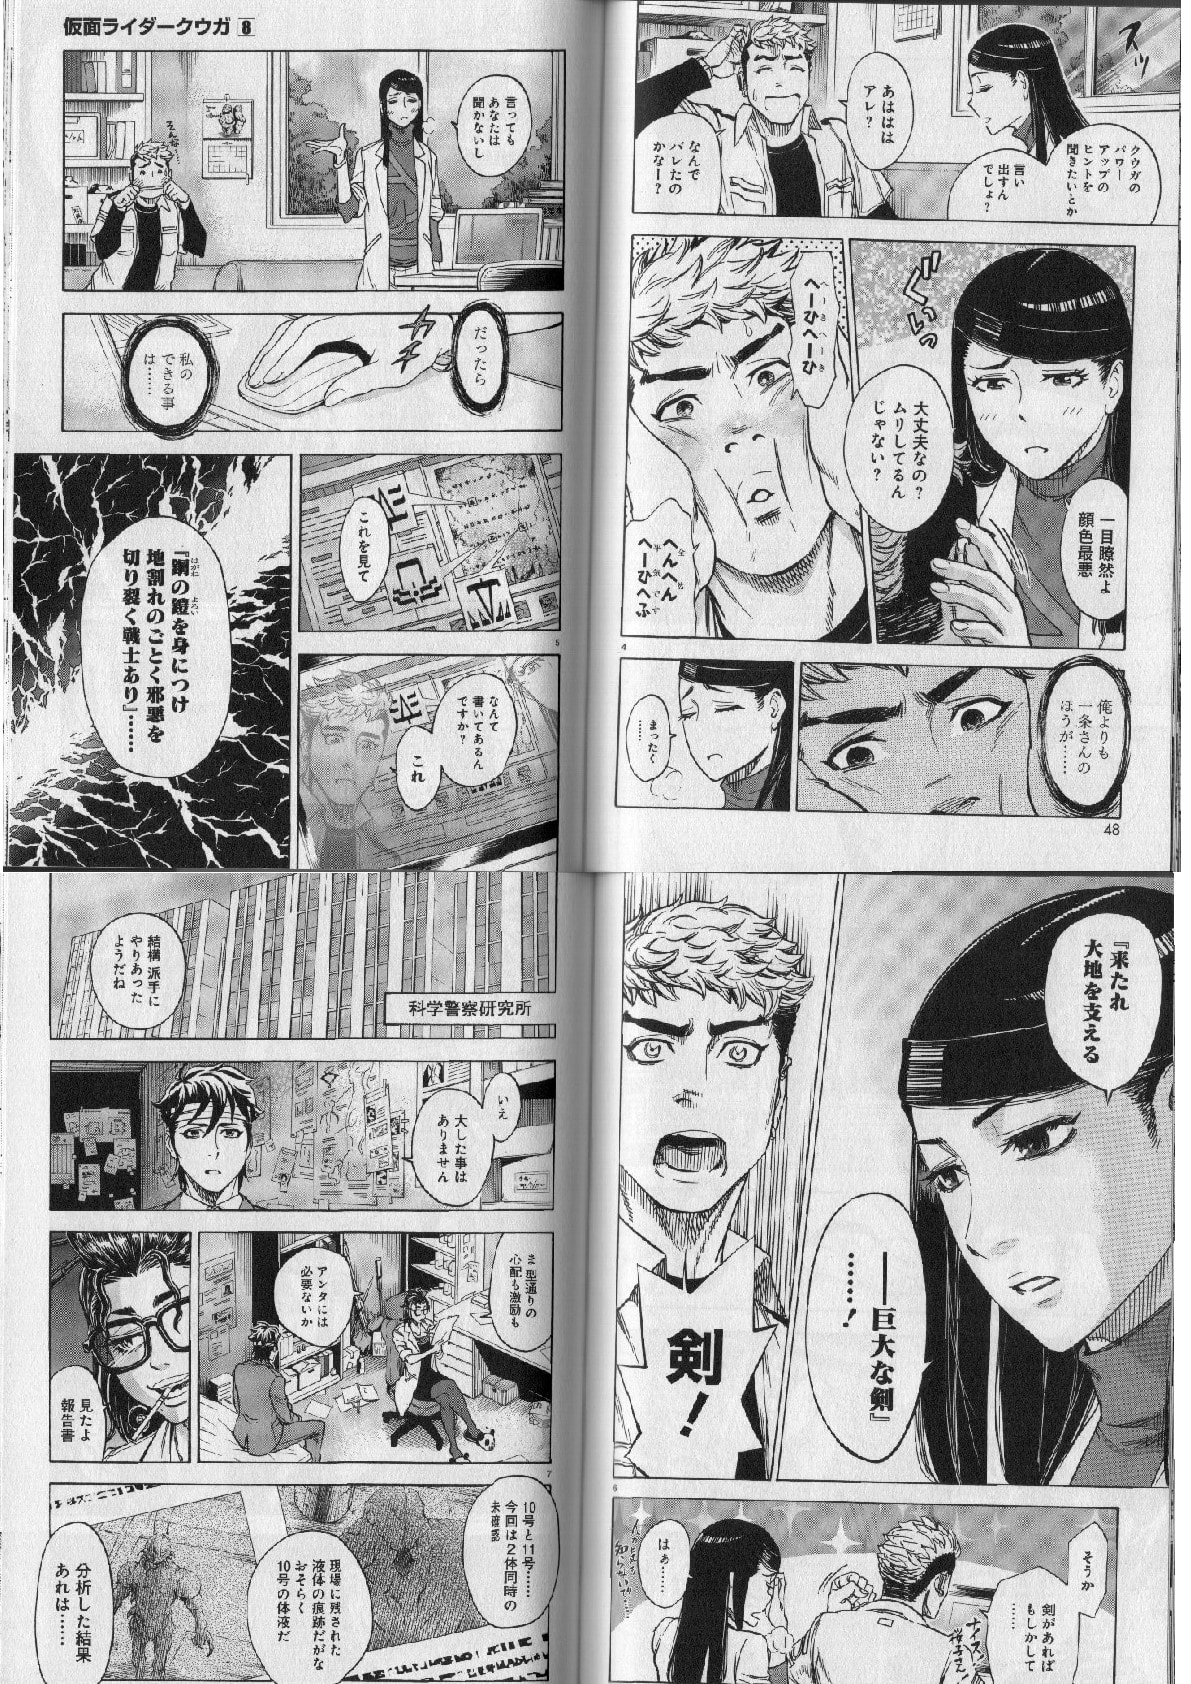 仮面 ライダー クウガ 漫画 感想 世界漫画の物語